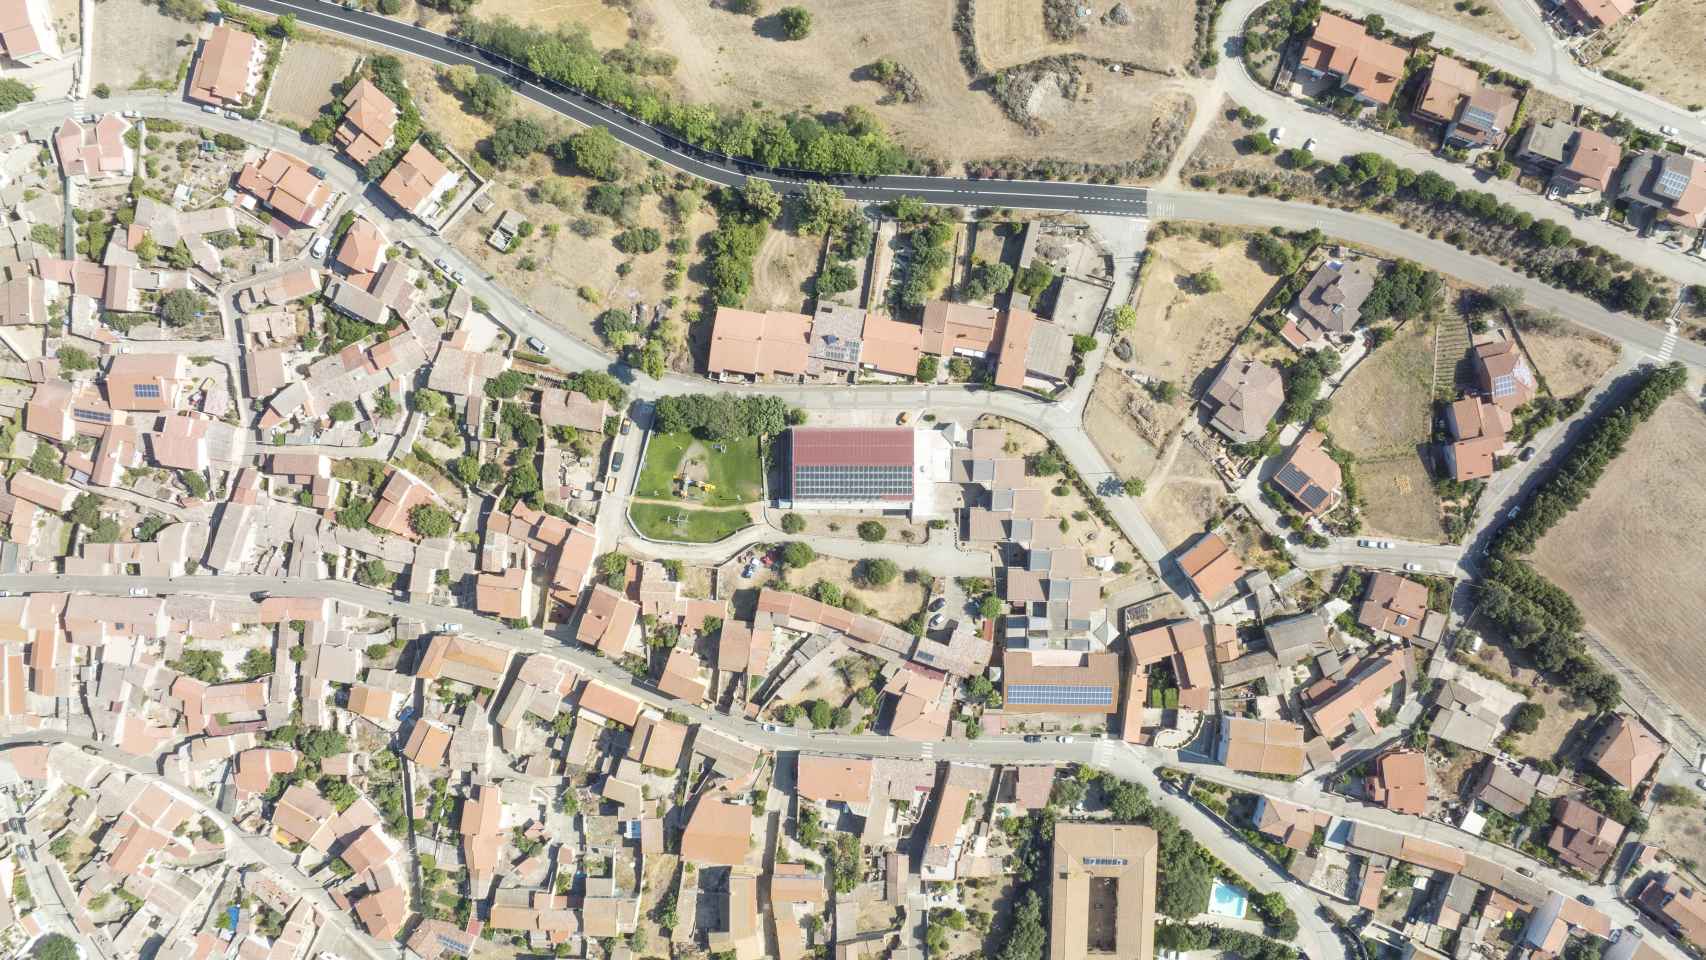 Vista aérea de los paneles fotovoltaicos de la comunidad energética de Villanovaforru en Cerdeña.